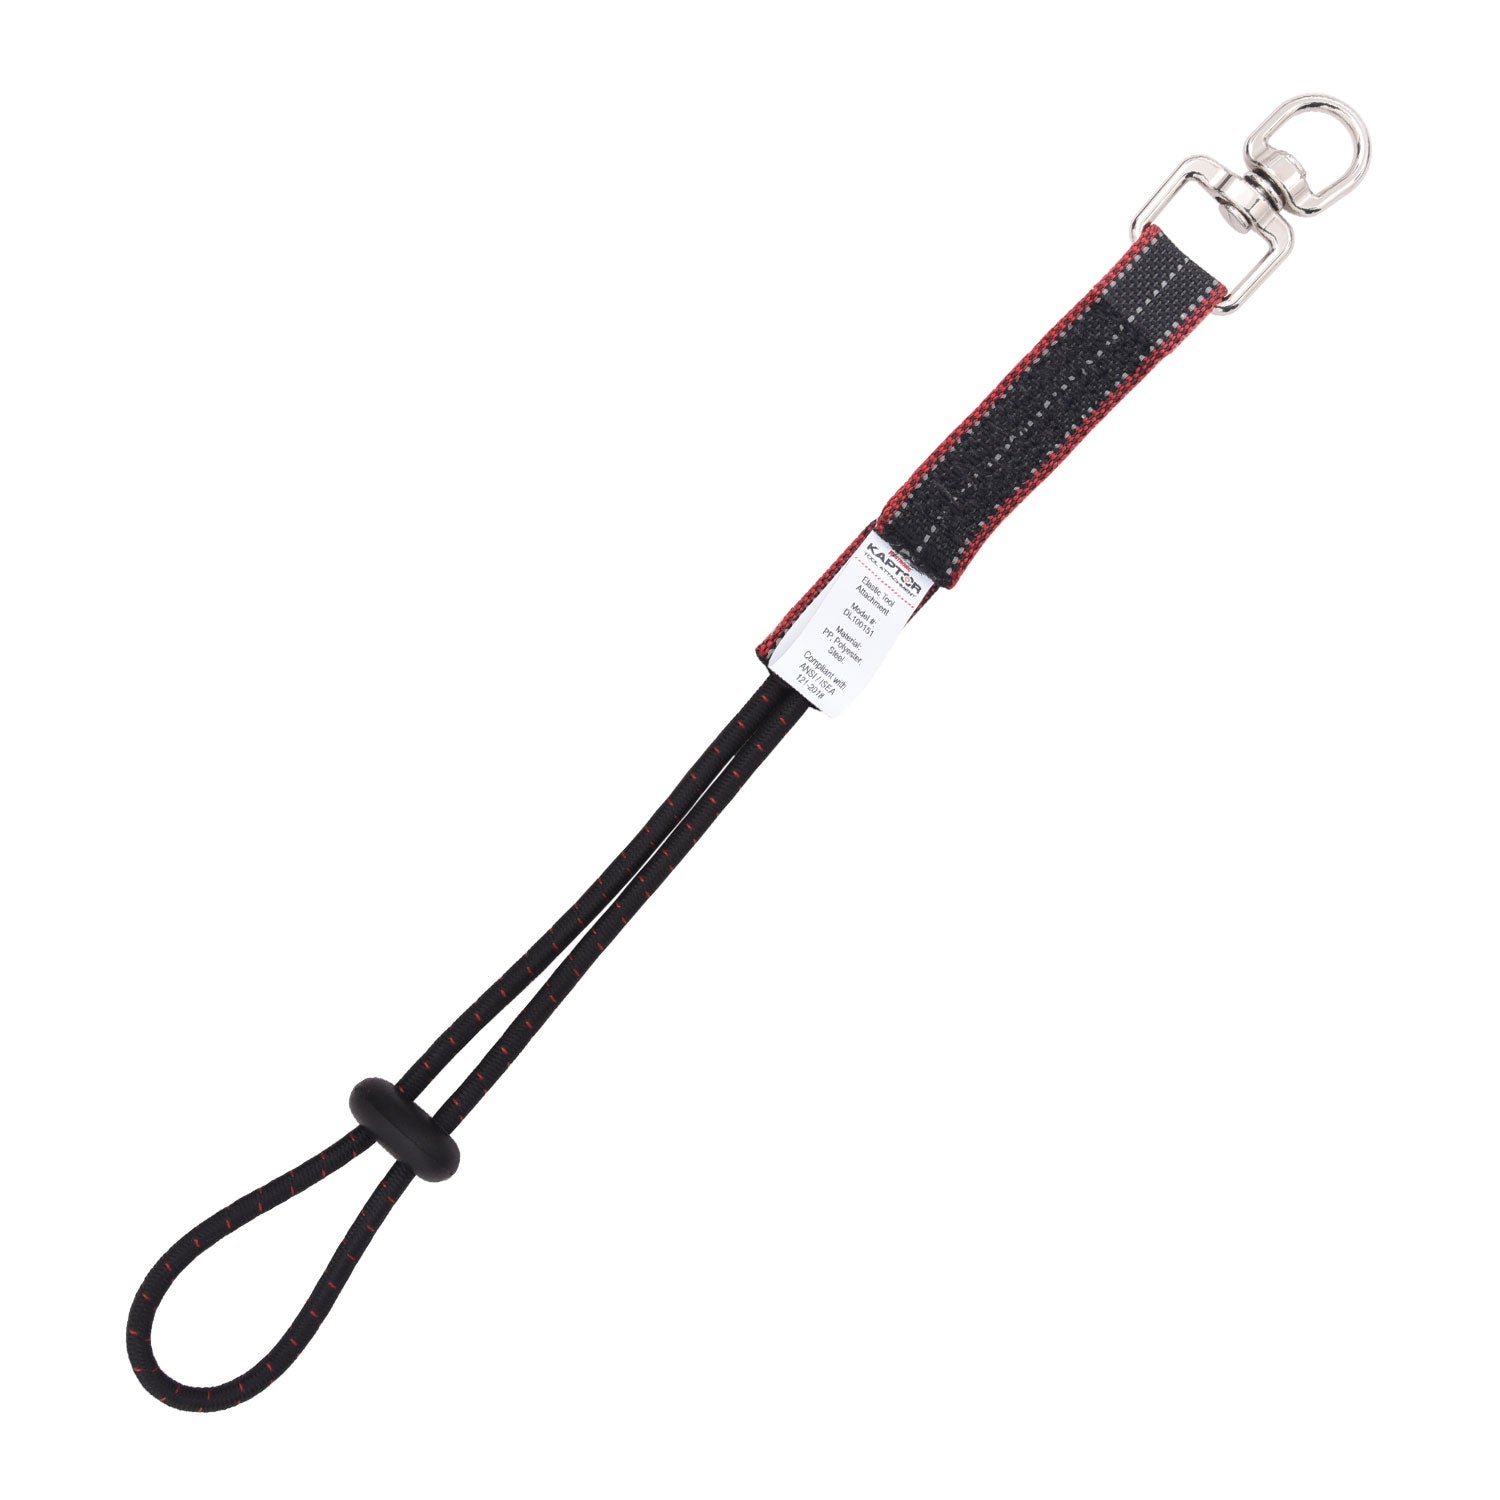 KStrong Kaptor™ Elastic Loop Tool Tails Swivel – 15 lbs. (pack of 3)